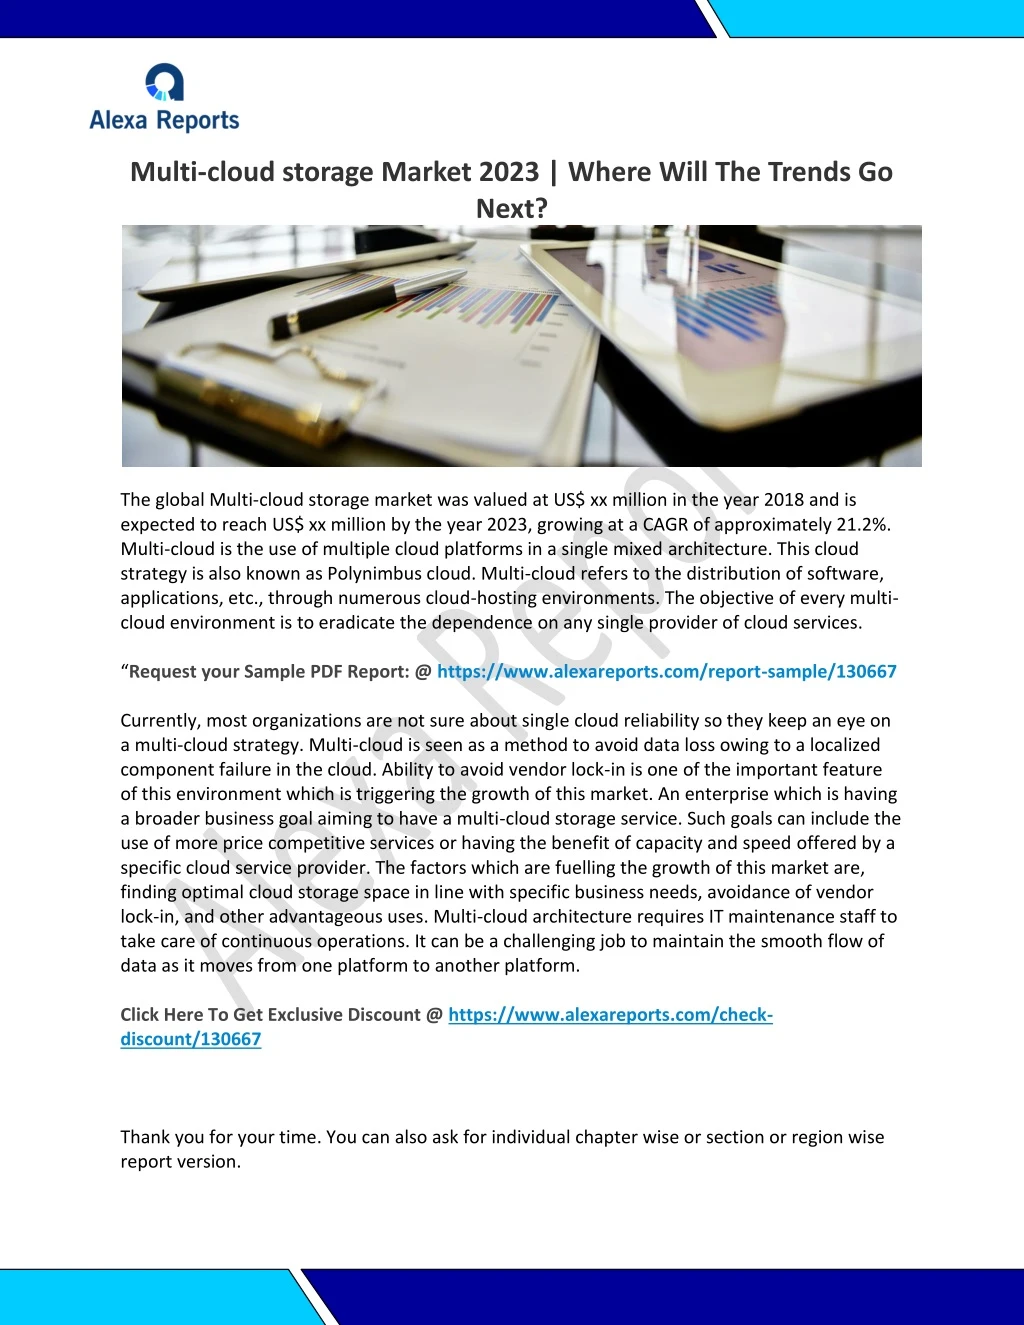 multi cloud storage market 2023 where will